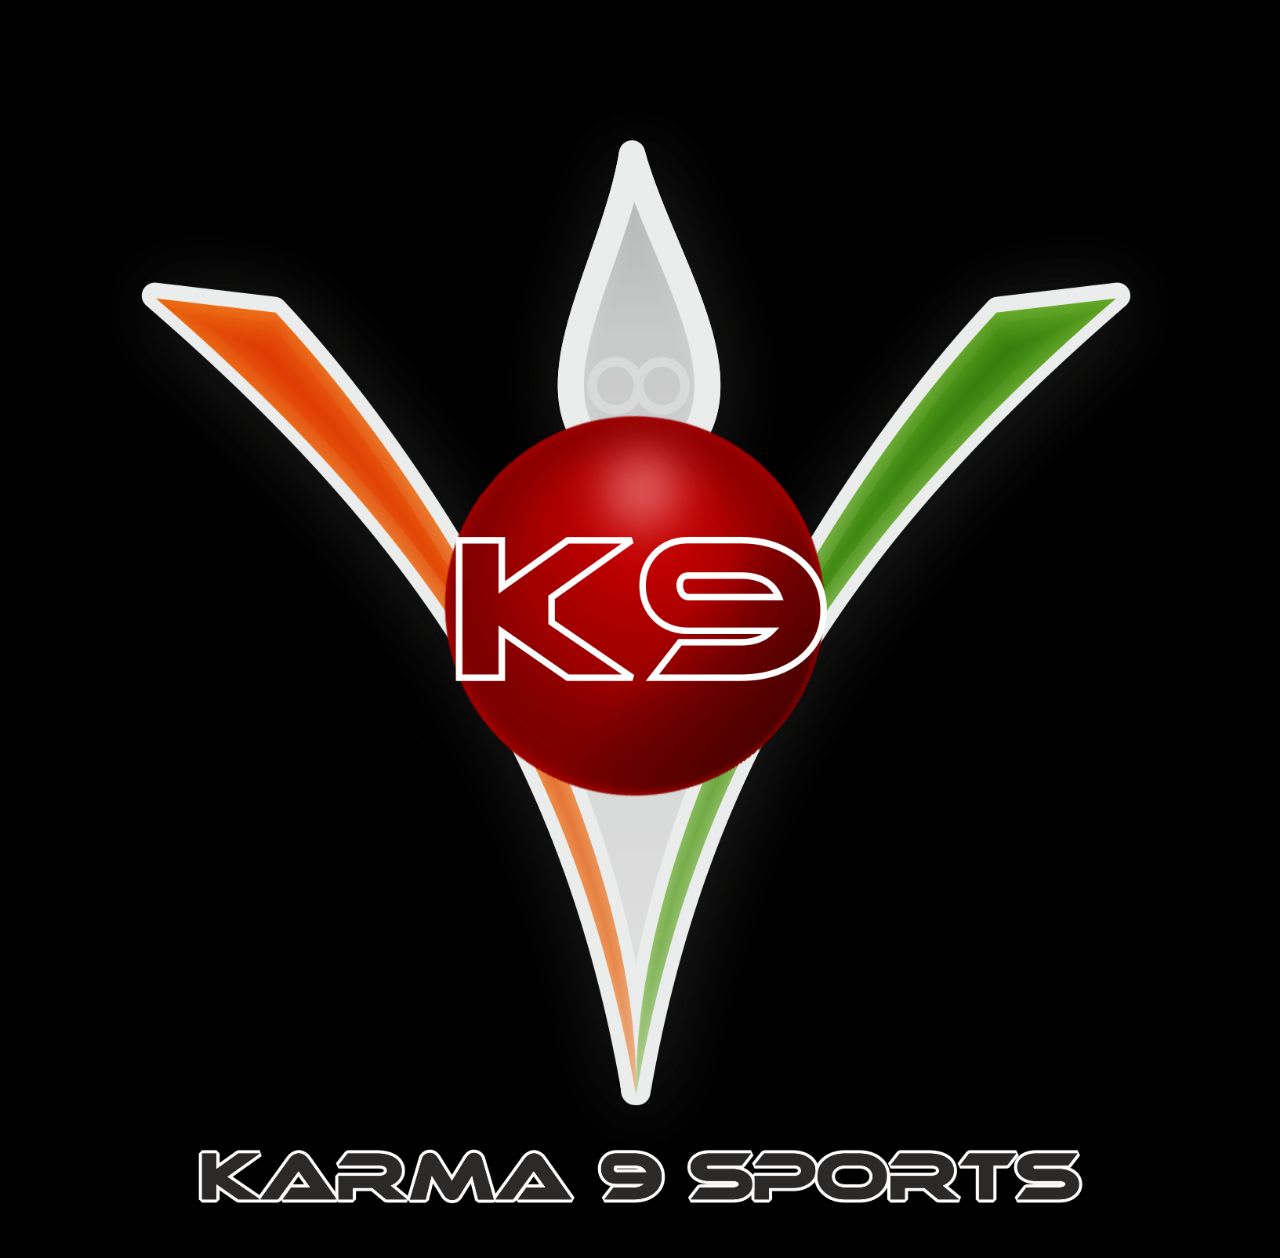 Karma 9 Sports